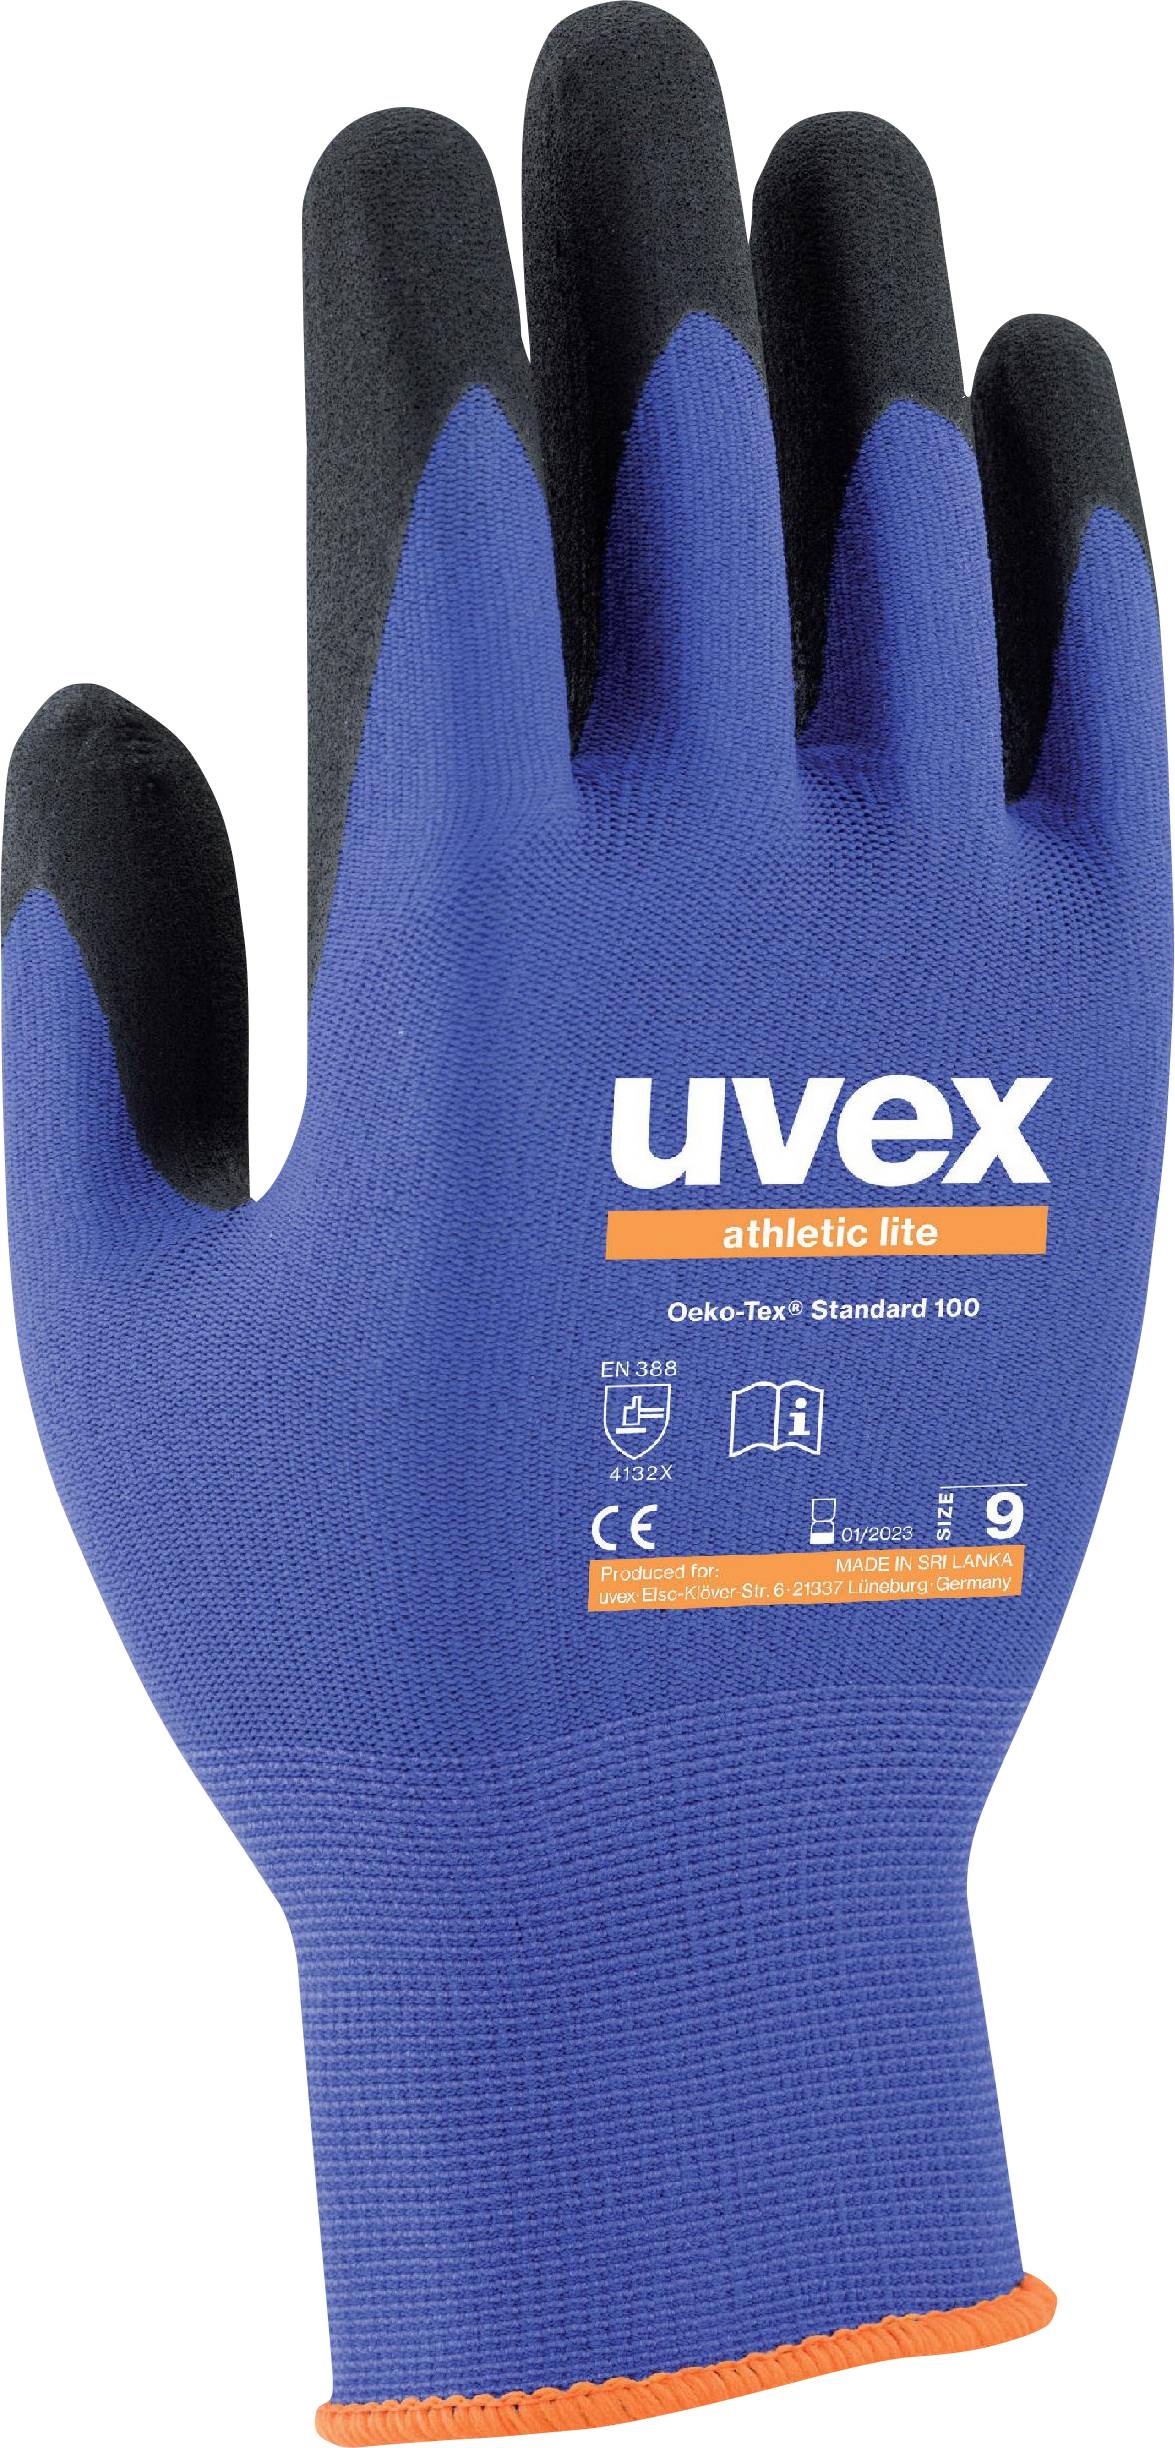 uvex 6038 Størrelse EN 388:2016 1 Paar købe